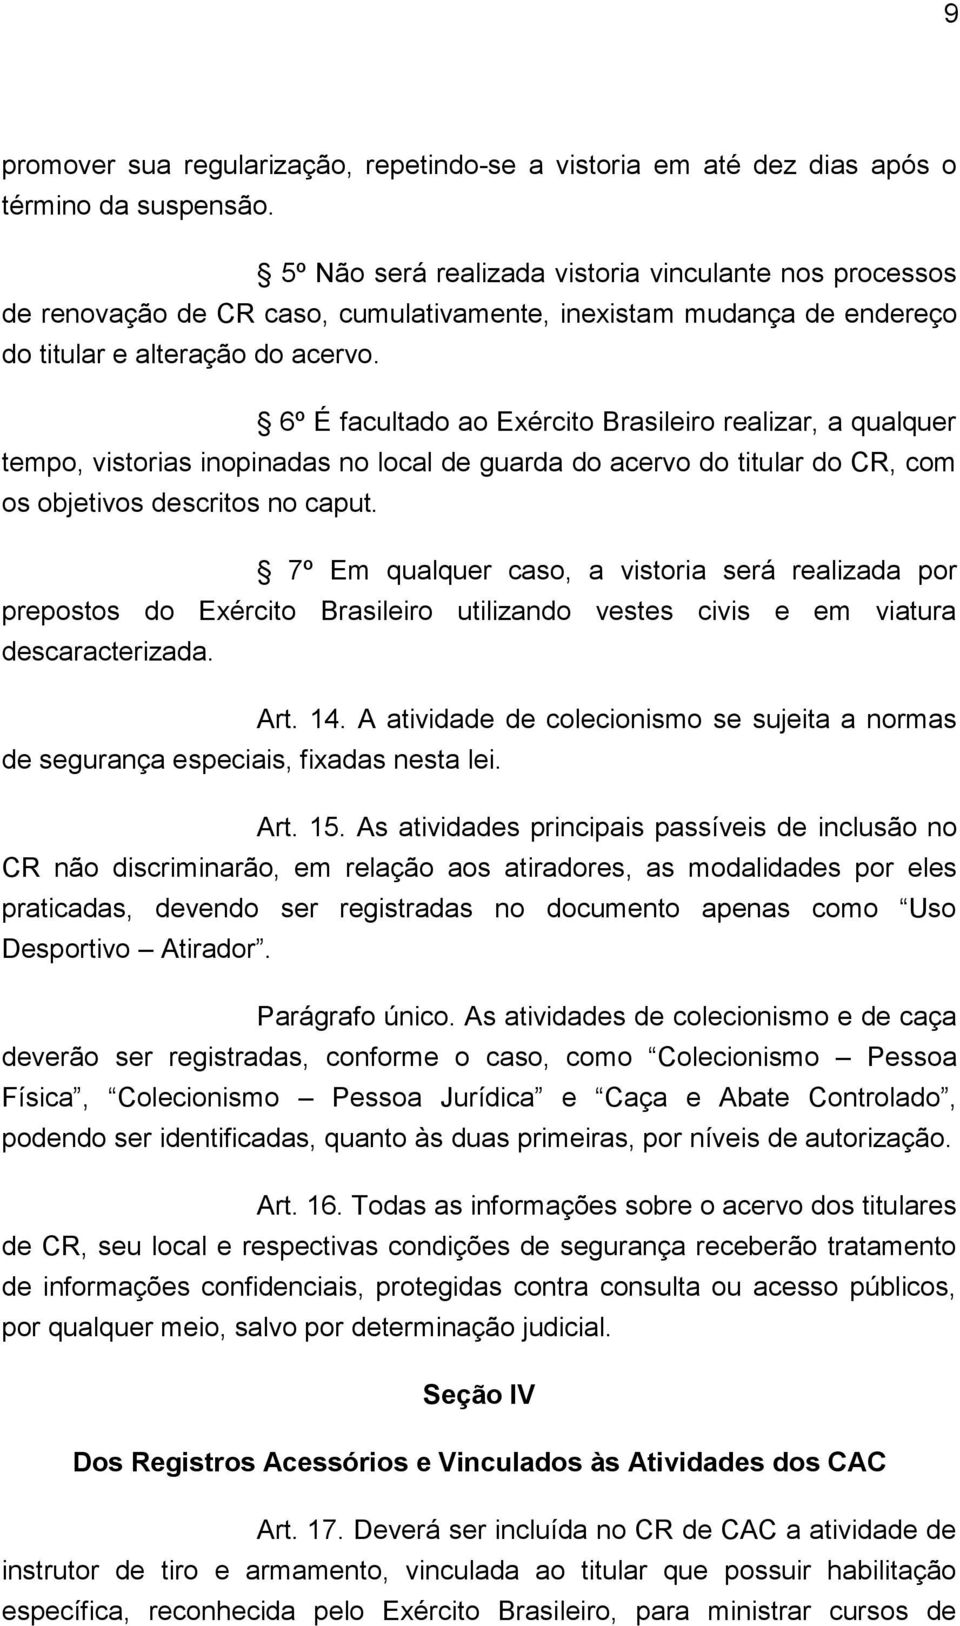 6º É facultado ao Exército Brasileiro realizar, a qualquer tempo, vistorias inopinadas no local de guarda do acervo do titular do CR, com os objetivos descritos no caput.